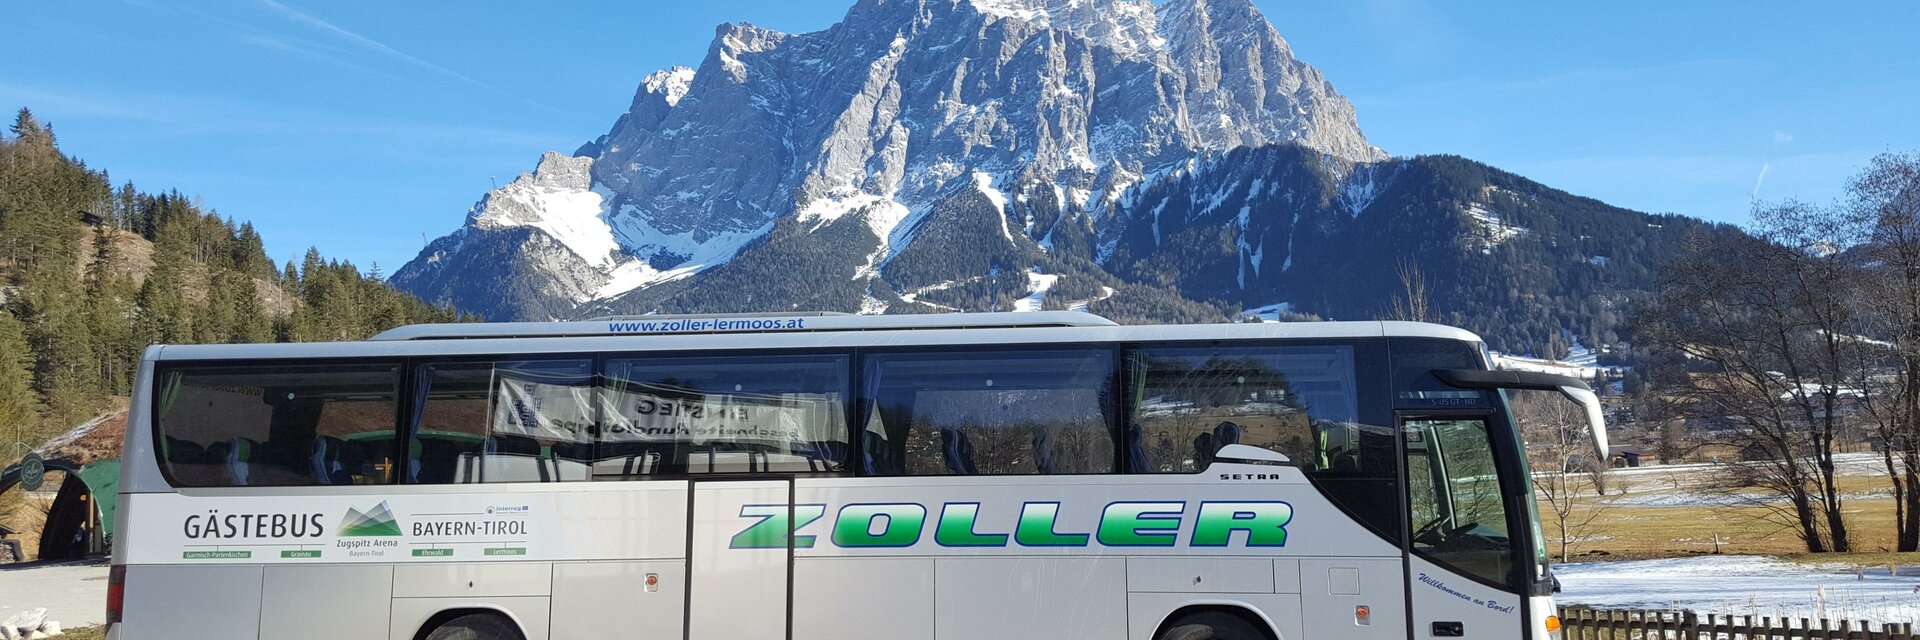 Gästebus Bayern-Tirol